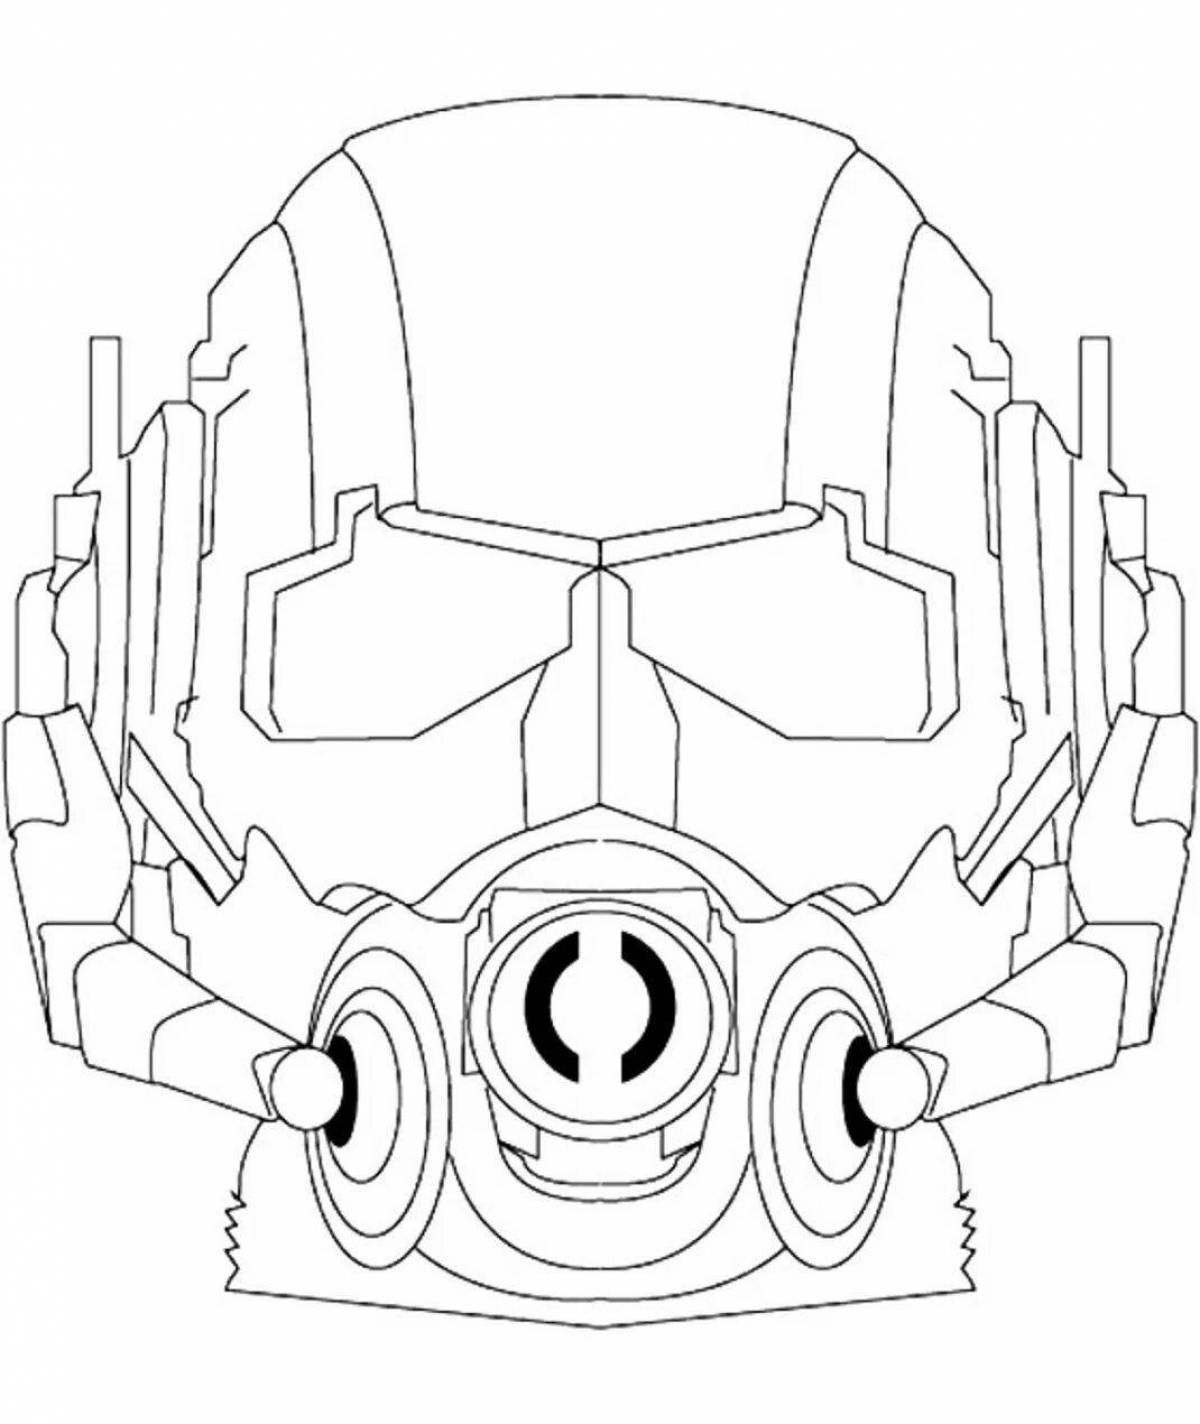 Подробный дизайн раскраски маски робота